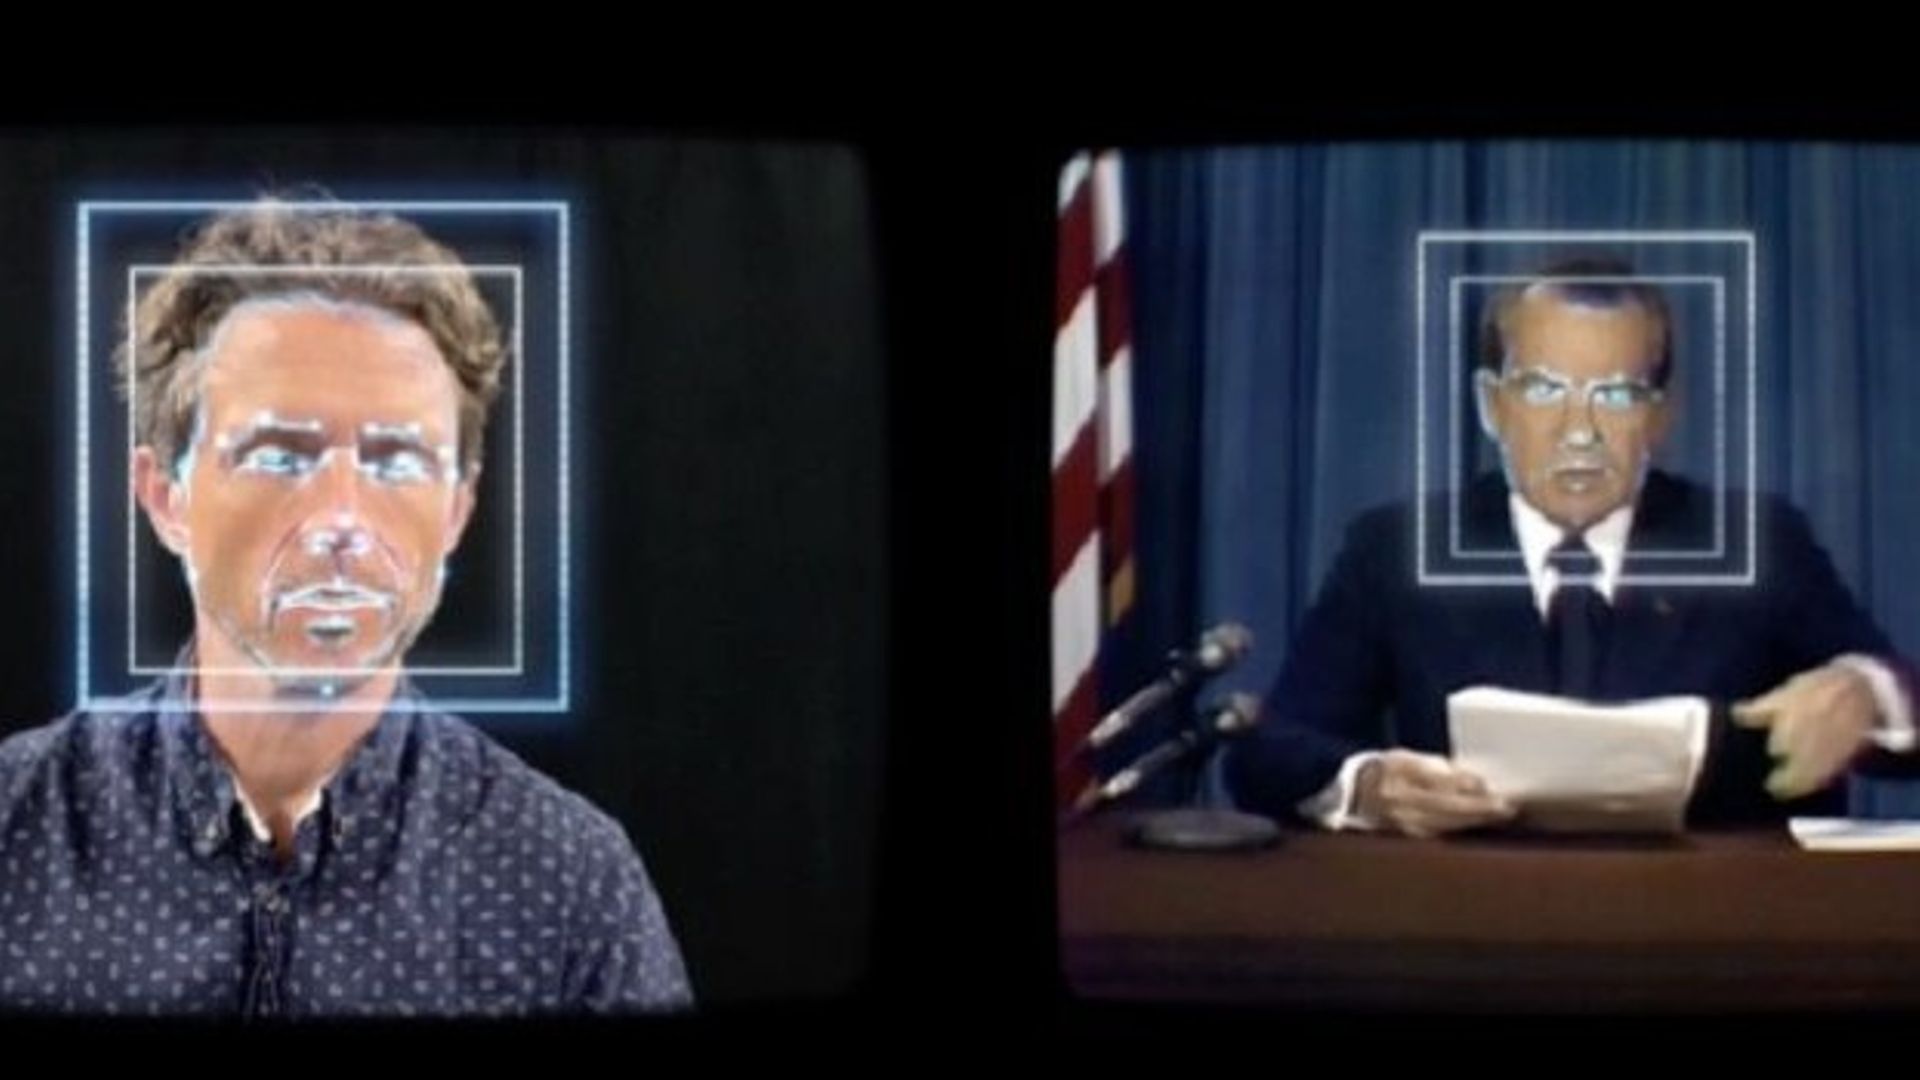 L’exposition "Deepfake : Unstable Evidence on Screen" du Museum of the Moving Image à New York s’intéresse aux vidéos dites "deepfakes".